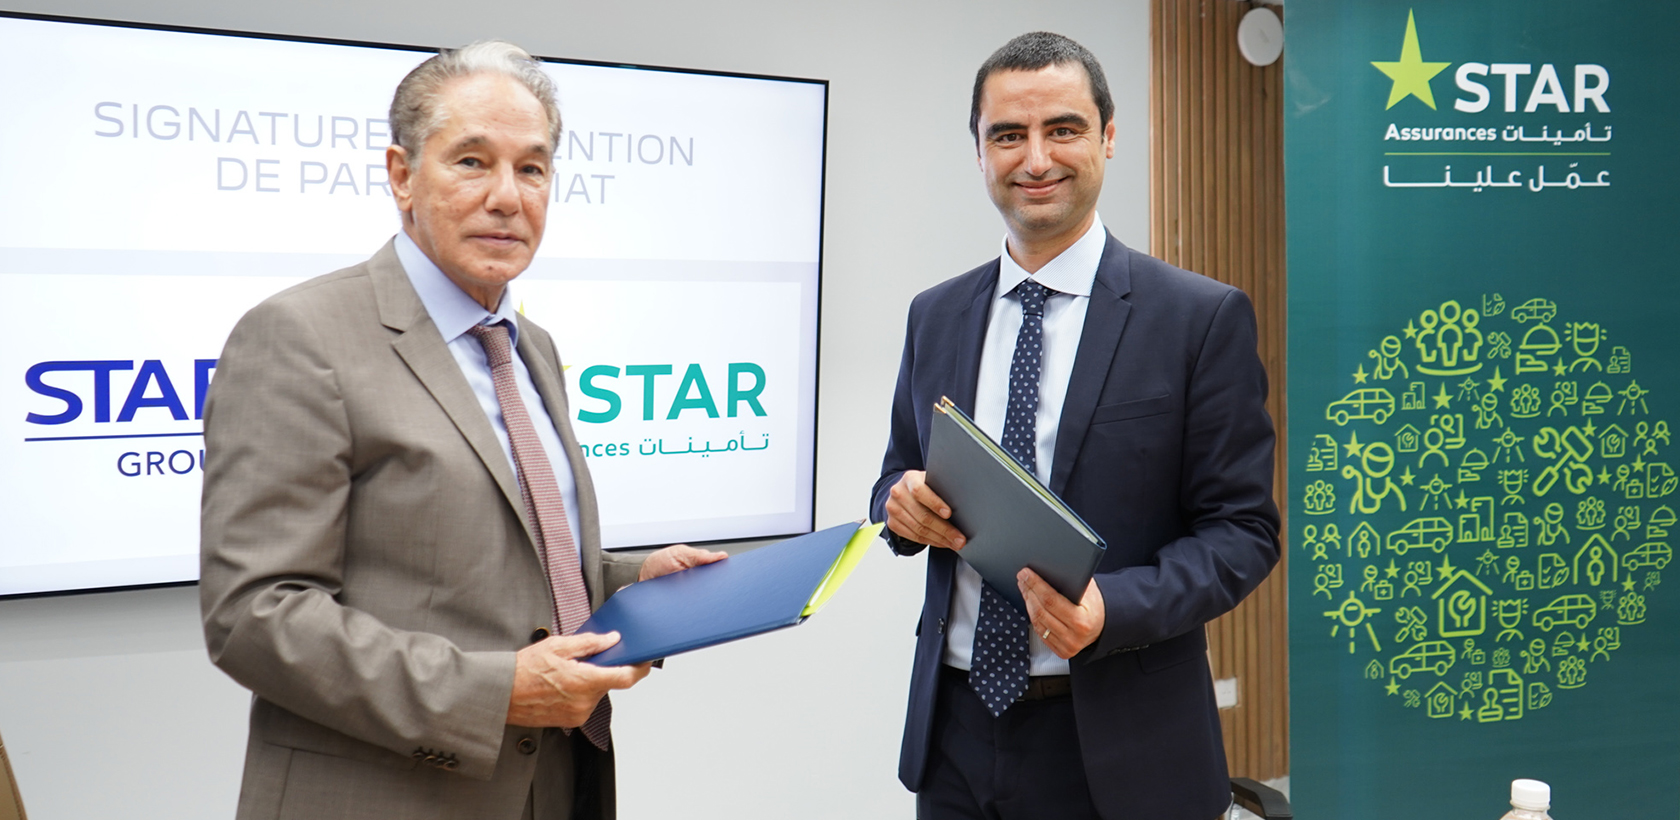 STAFIM signe une convention de partenariat avec STAR Assurances